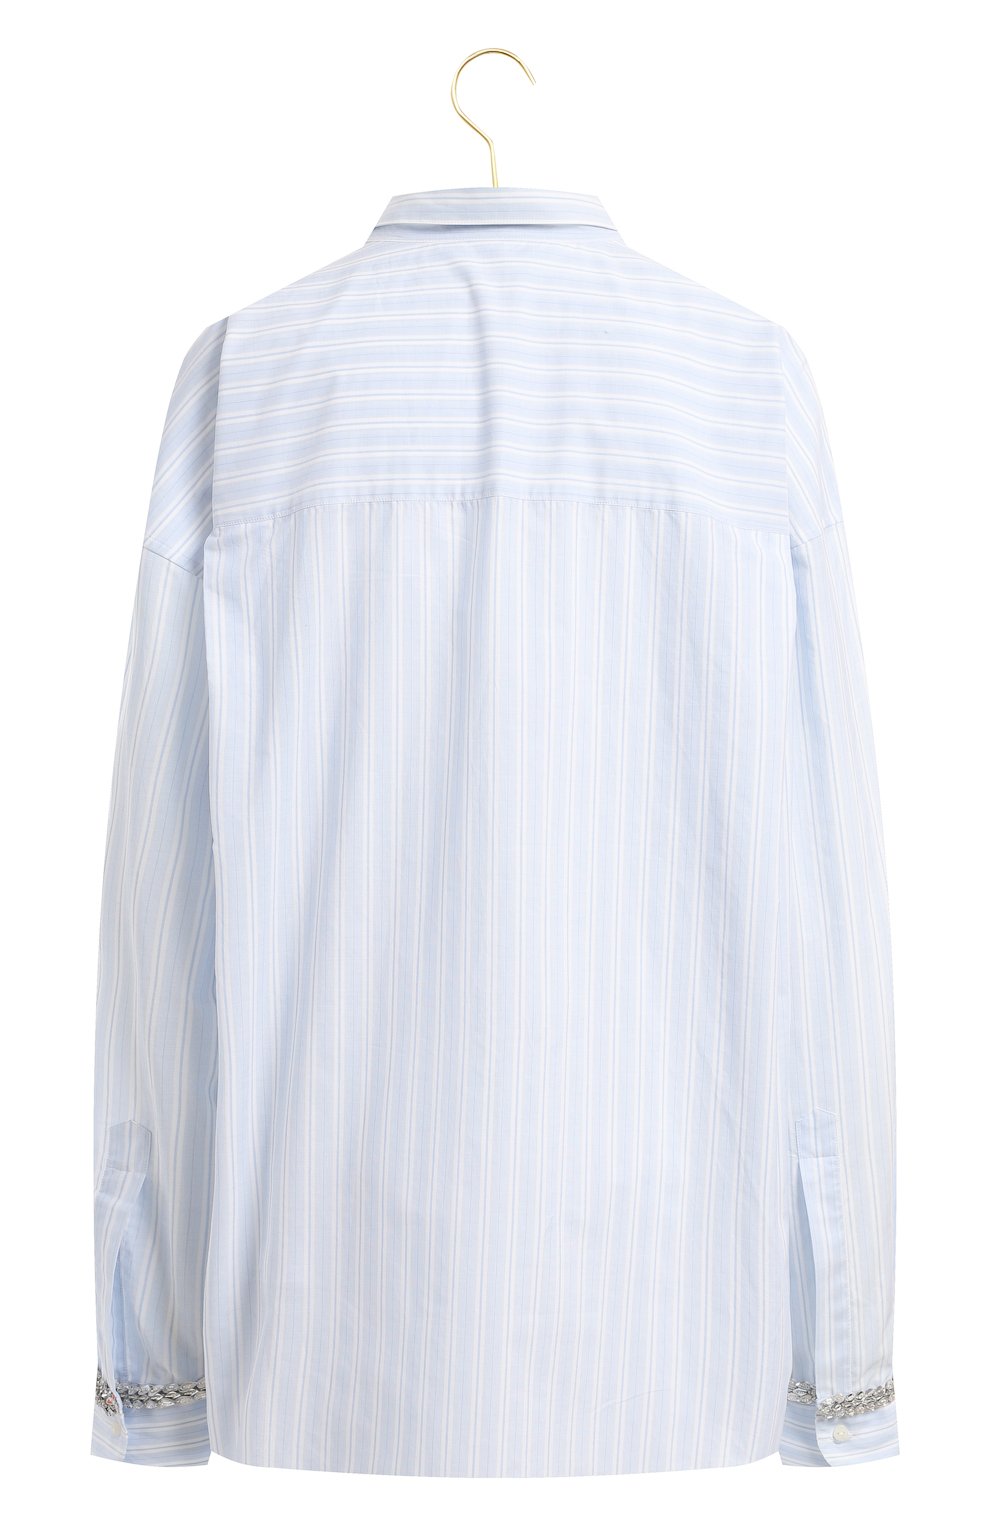 Хлопковая рубашка | Ermanno Scervino | Голубой - 2